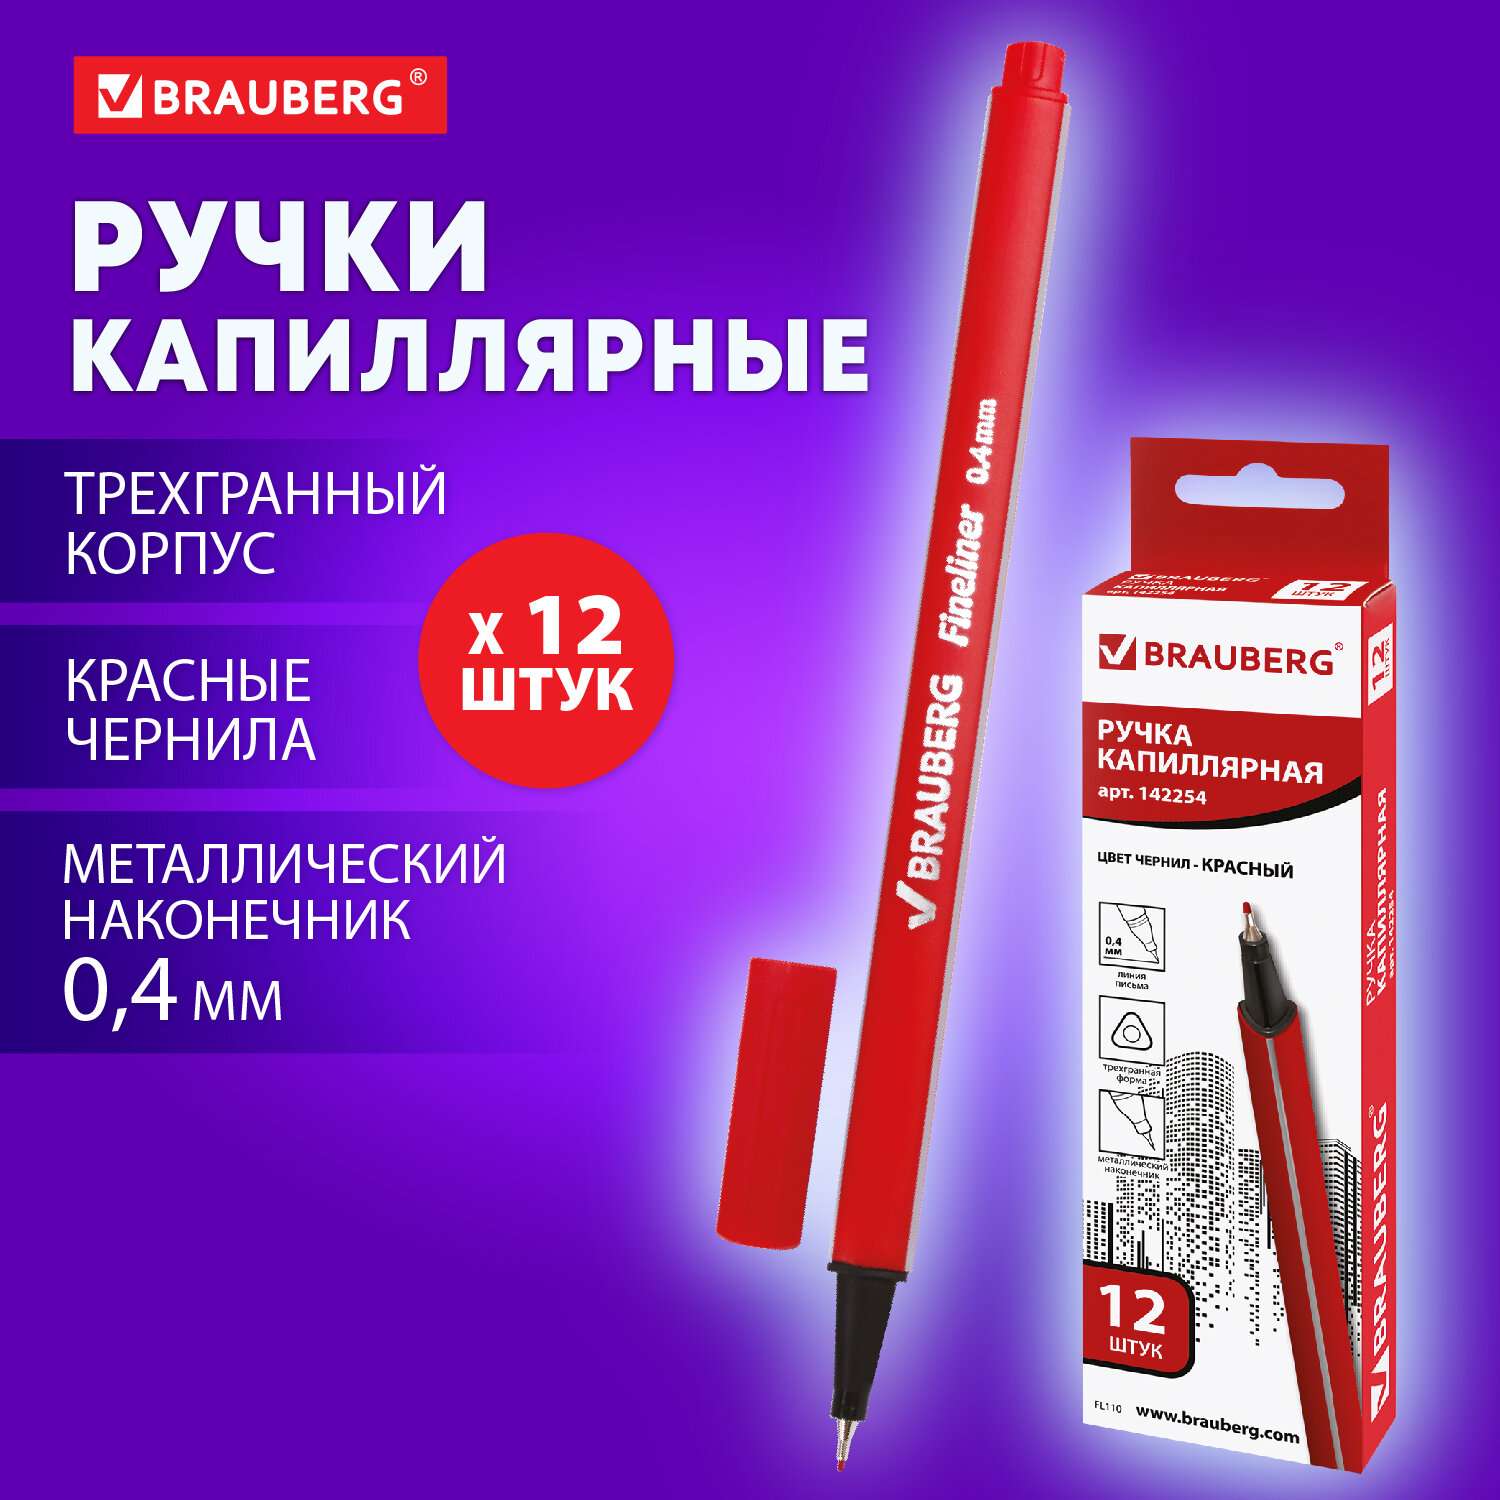 Ручки капиллярные Brauberg линеры красные набор 12 шт для рисования и скетчинга - фото 1